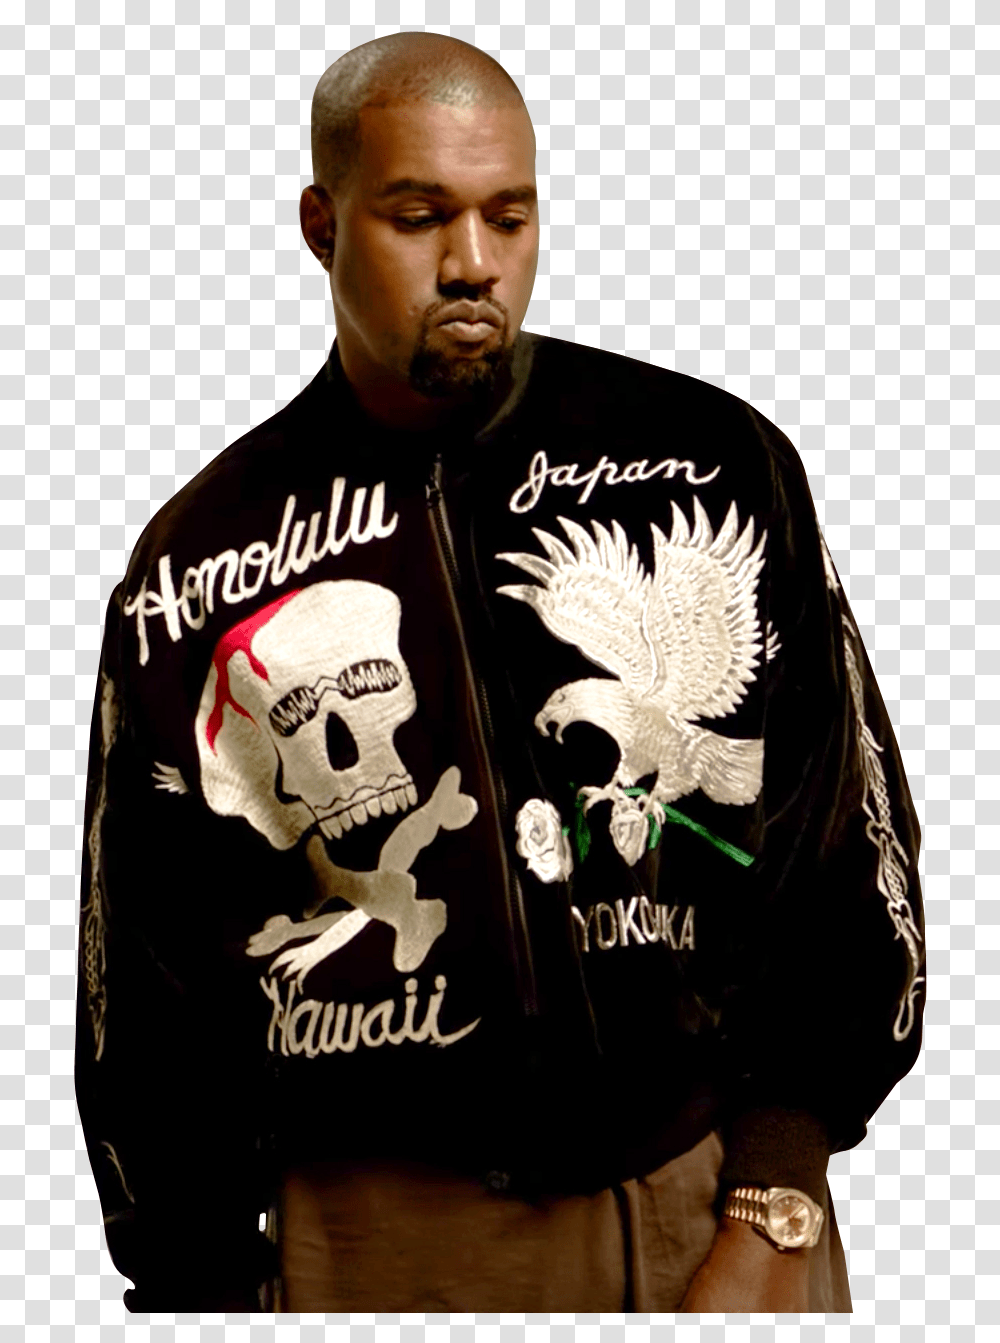 Kanye West Image Kayne West Ft Lil Pump I Love, Clothing, Apparel, Skin, Sleeve Transparent Png